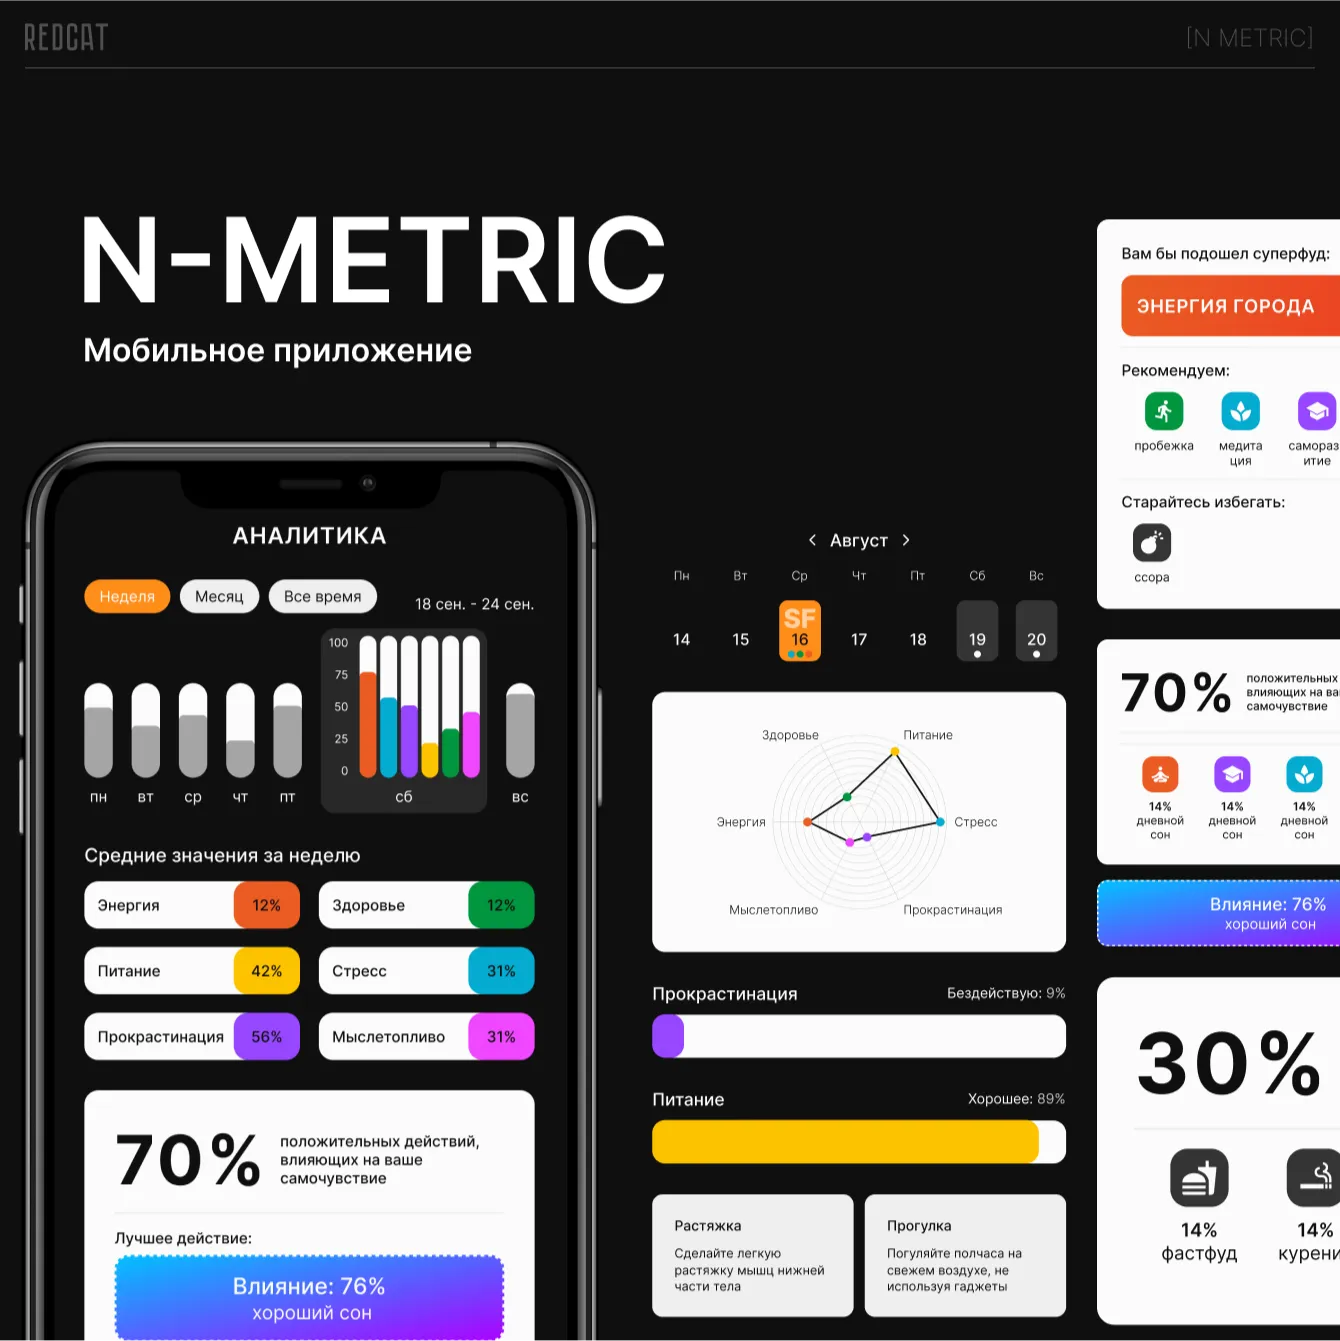 N-metric: Мобильное приложение